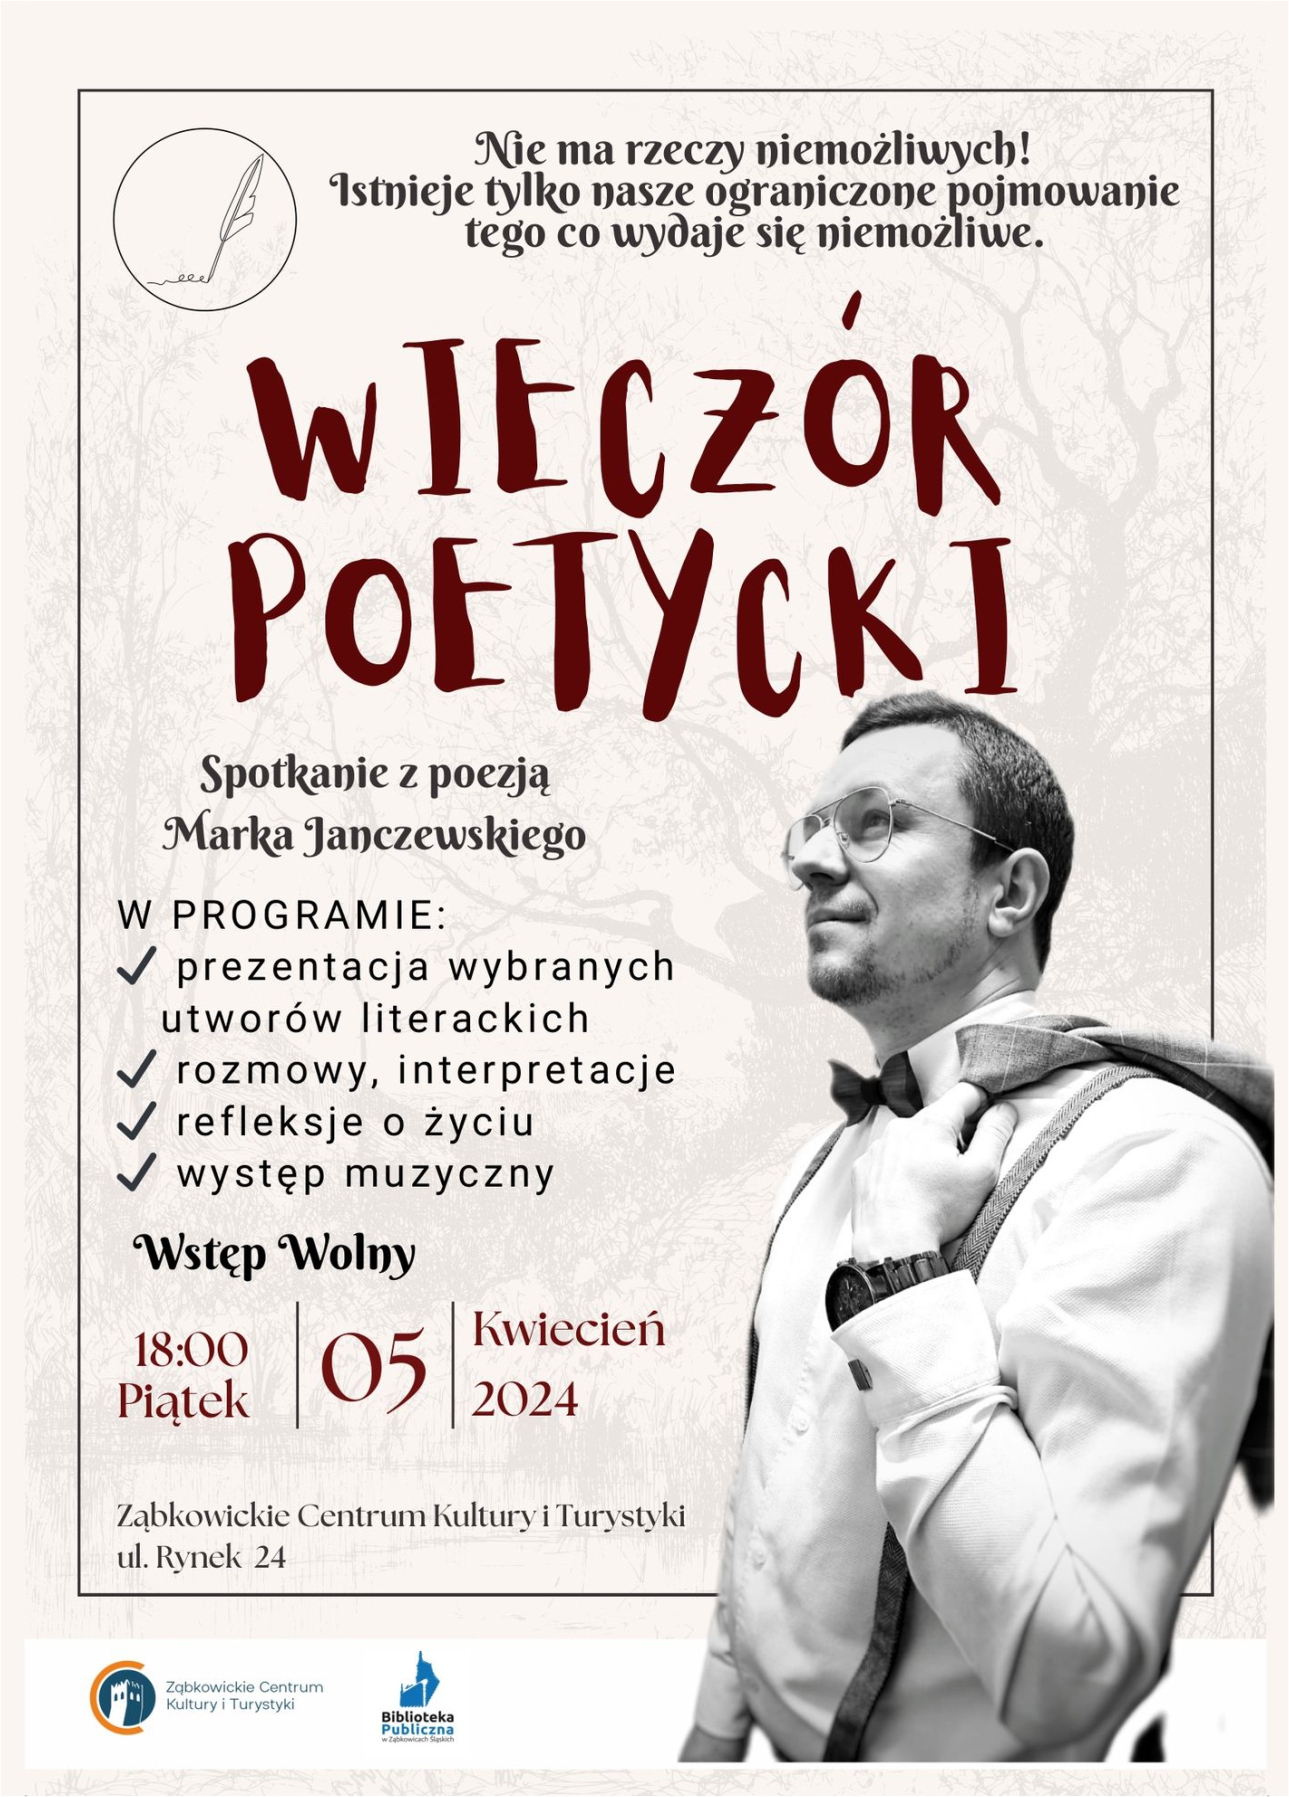 Plakat informacyjny o Wieczorze Poetyckim Marka Janczewskiego 5 kwietnia 2024 o godzinie 18:00 w Ząbkowickim Centrum Kultury i Turystyki.